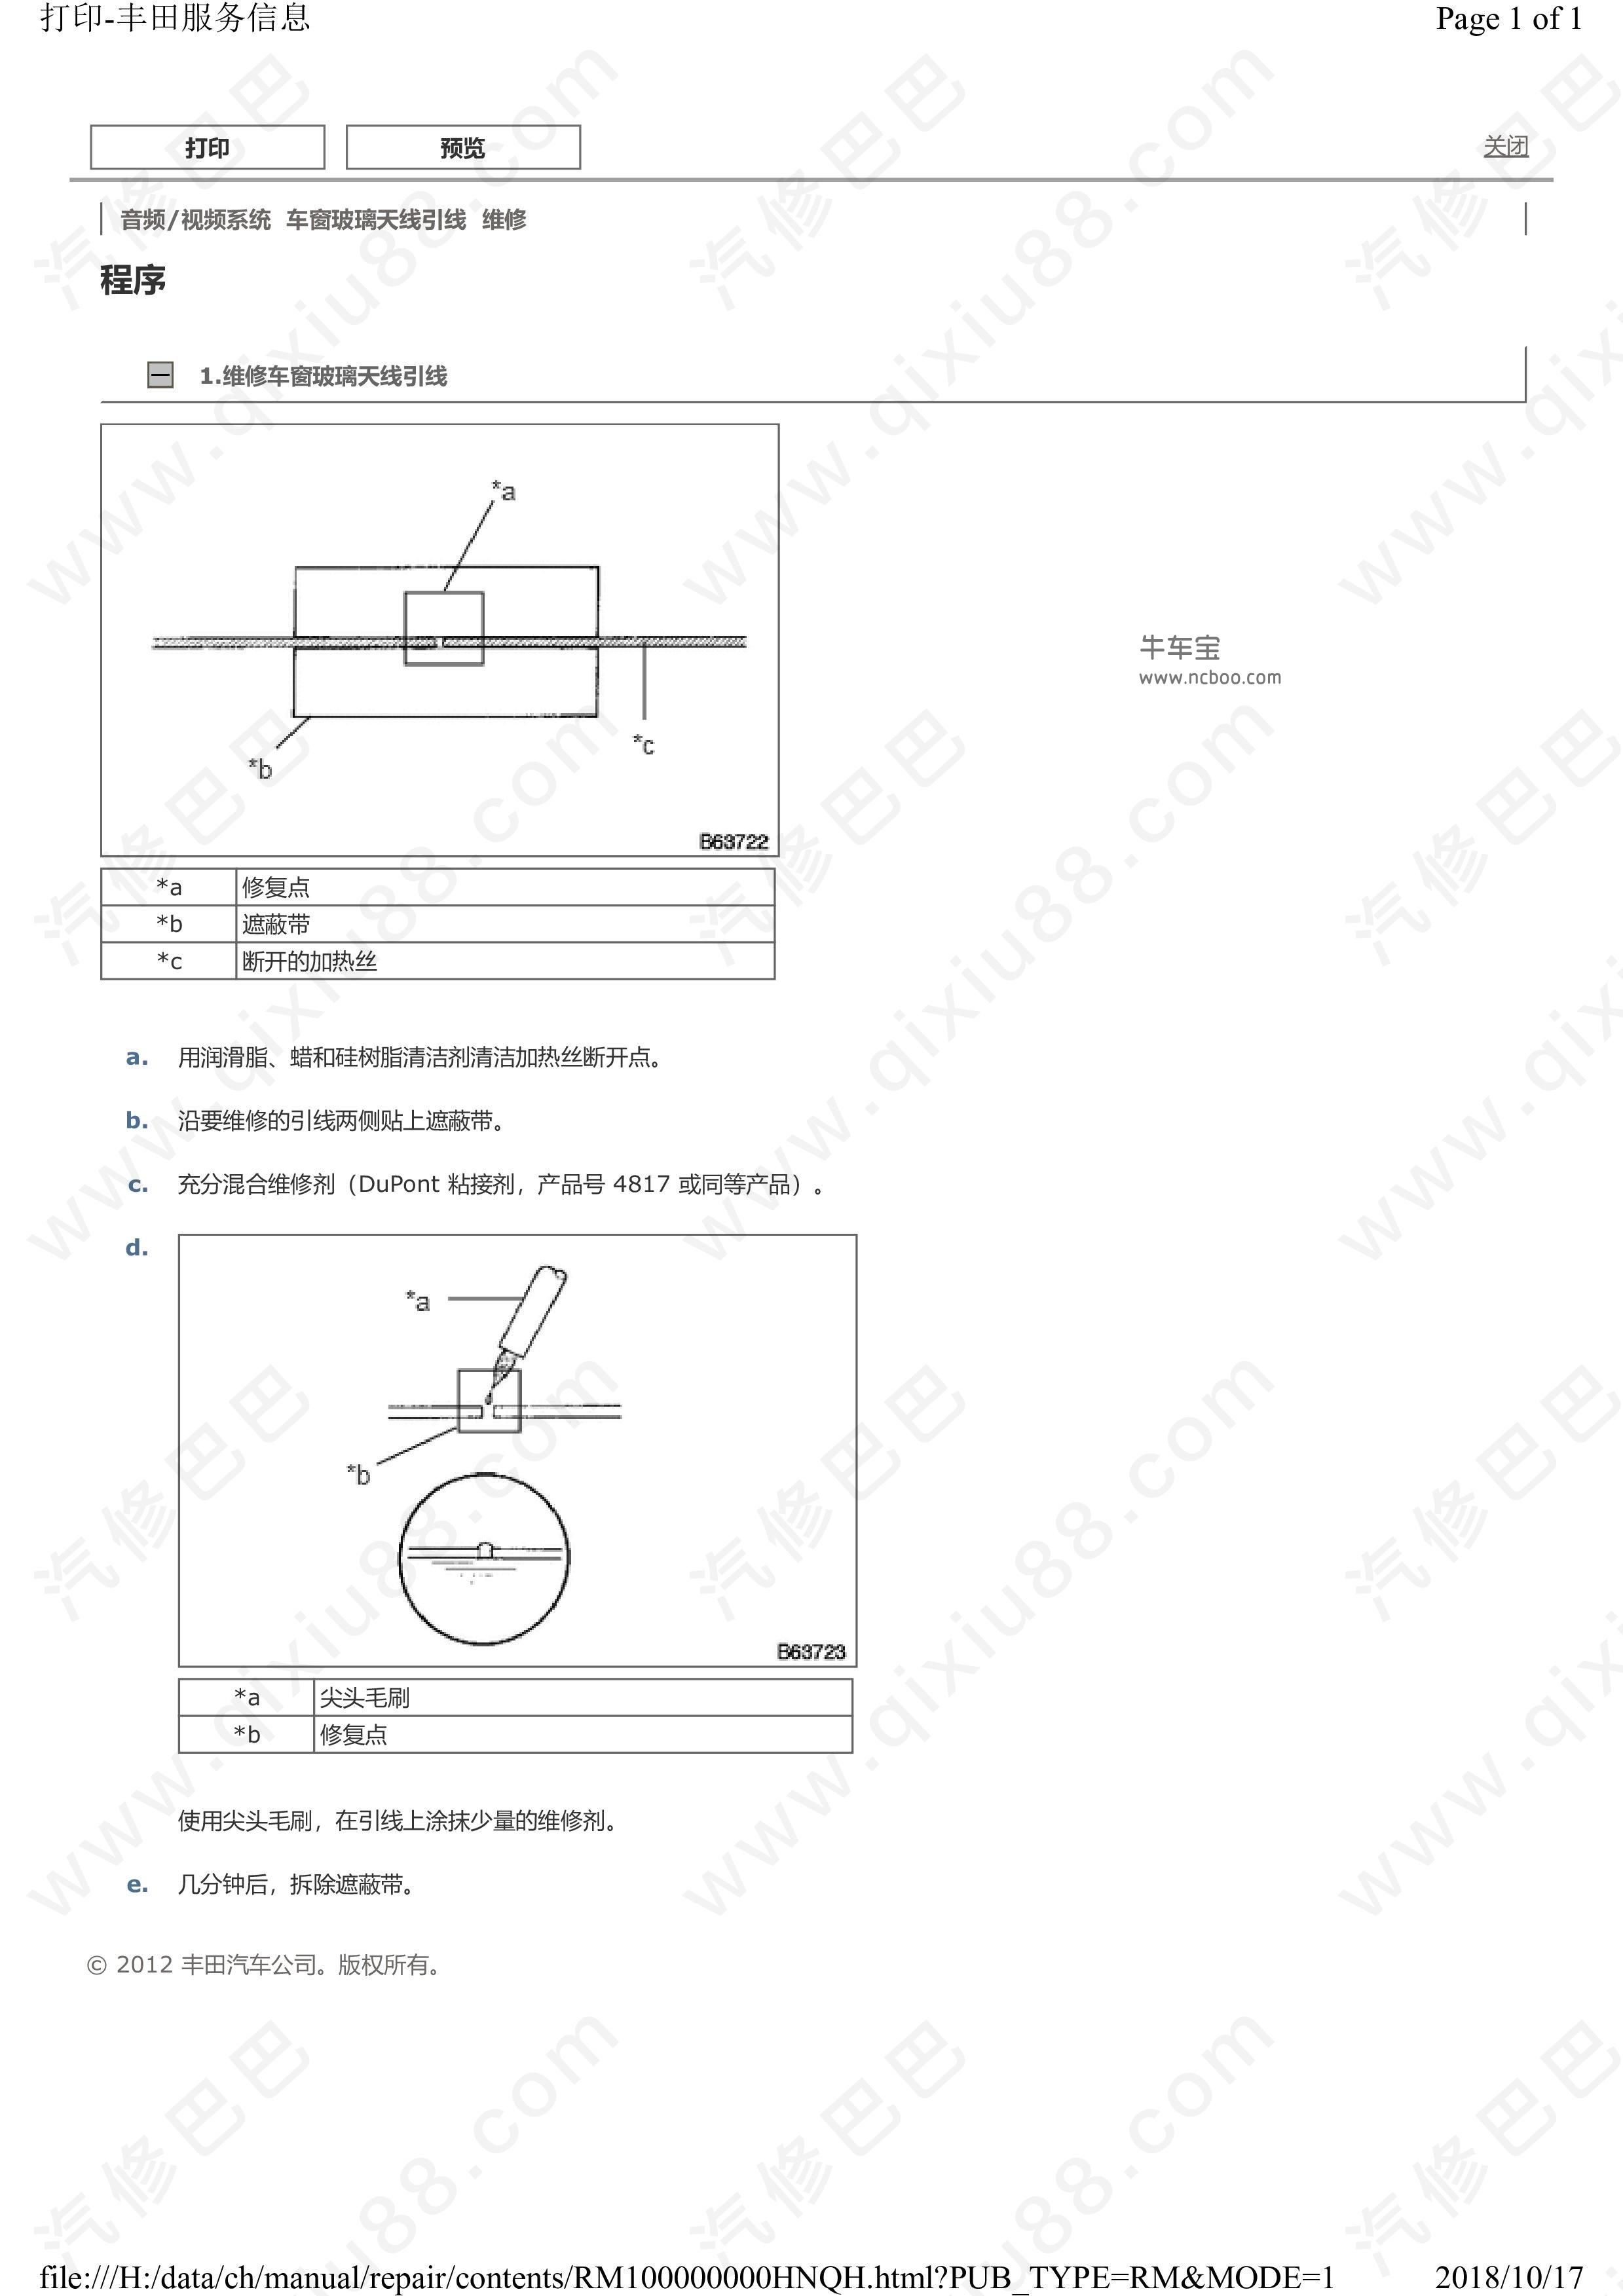 丰田皇冠音频 视频系统 扬声器 天线维修手册和线路图